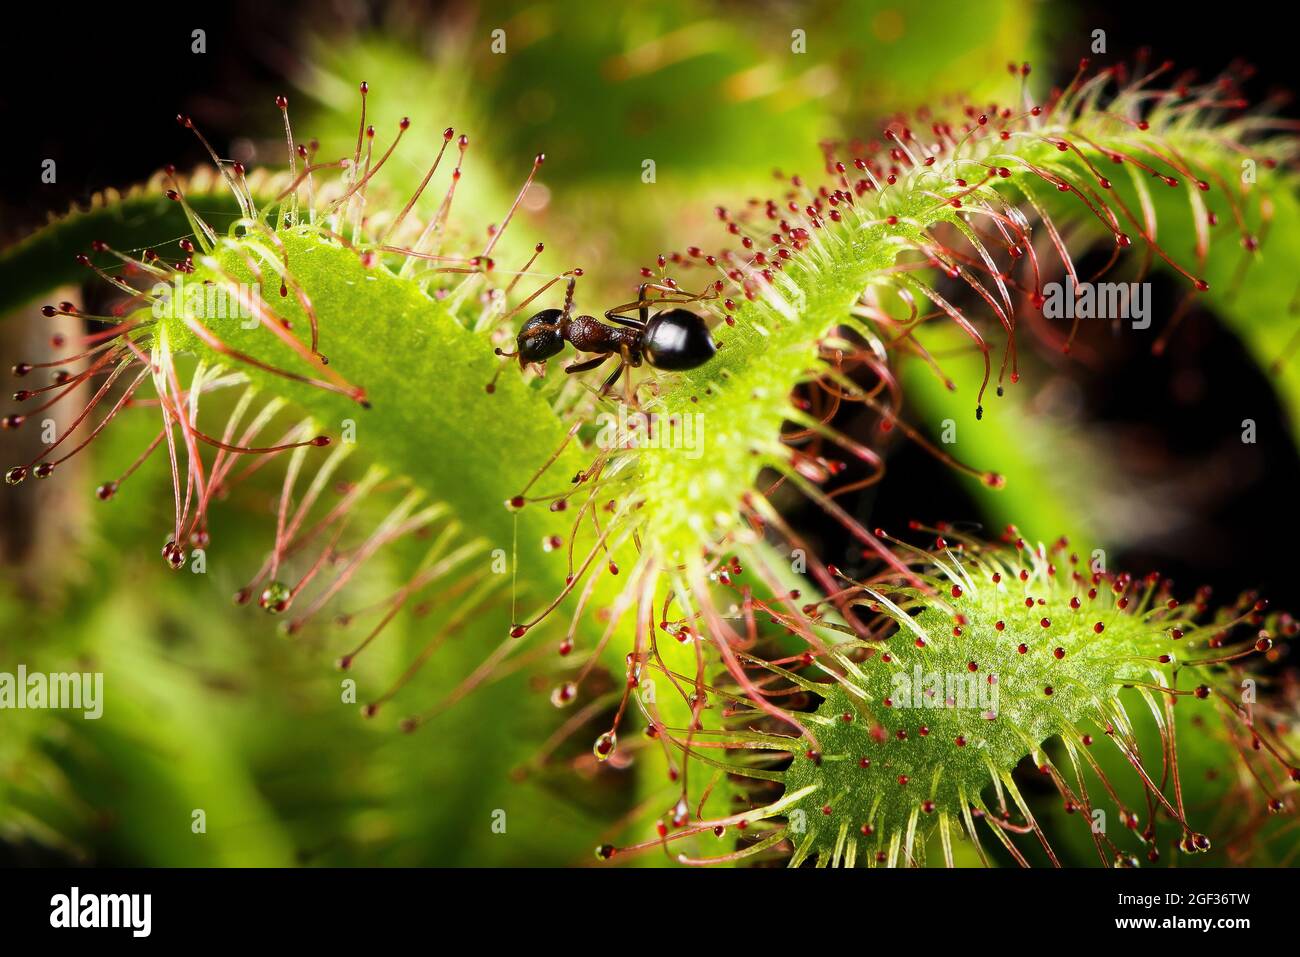 Ameise, die von einem Drosera capensis (Kapsundaw) gefangen wurde. Fleischfressende Pflanze in Aktion. Stockfoto